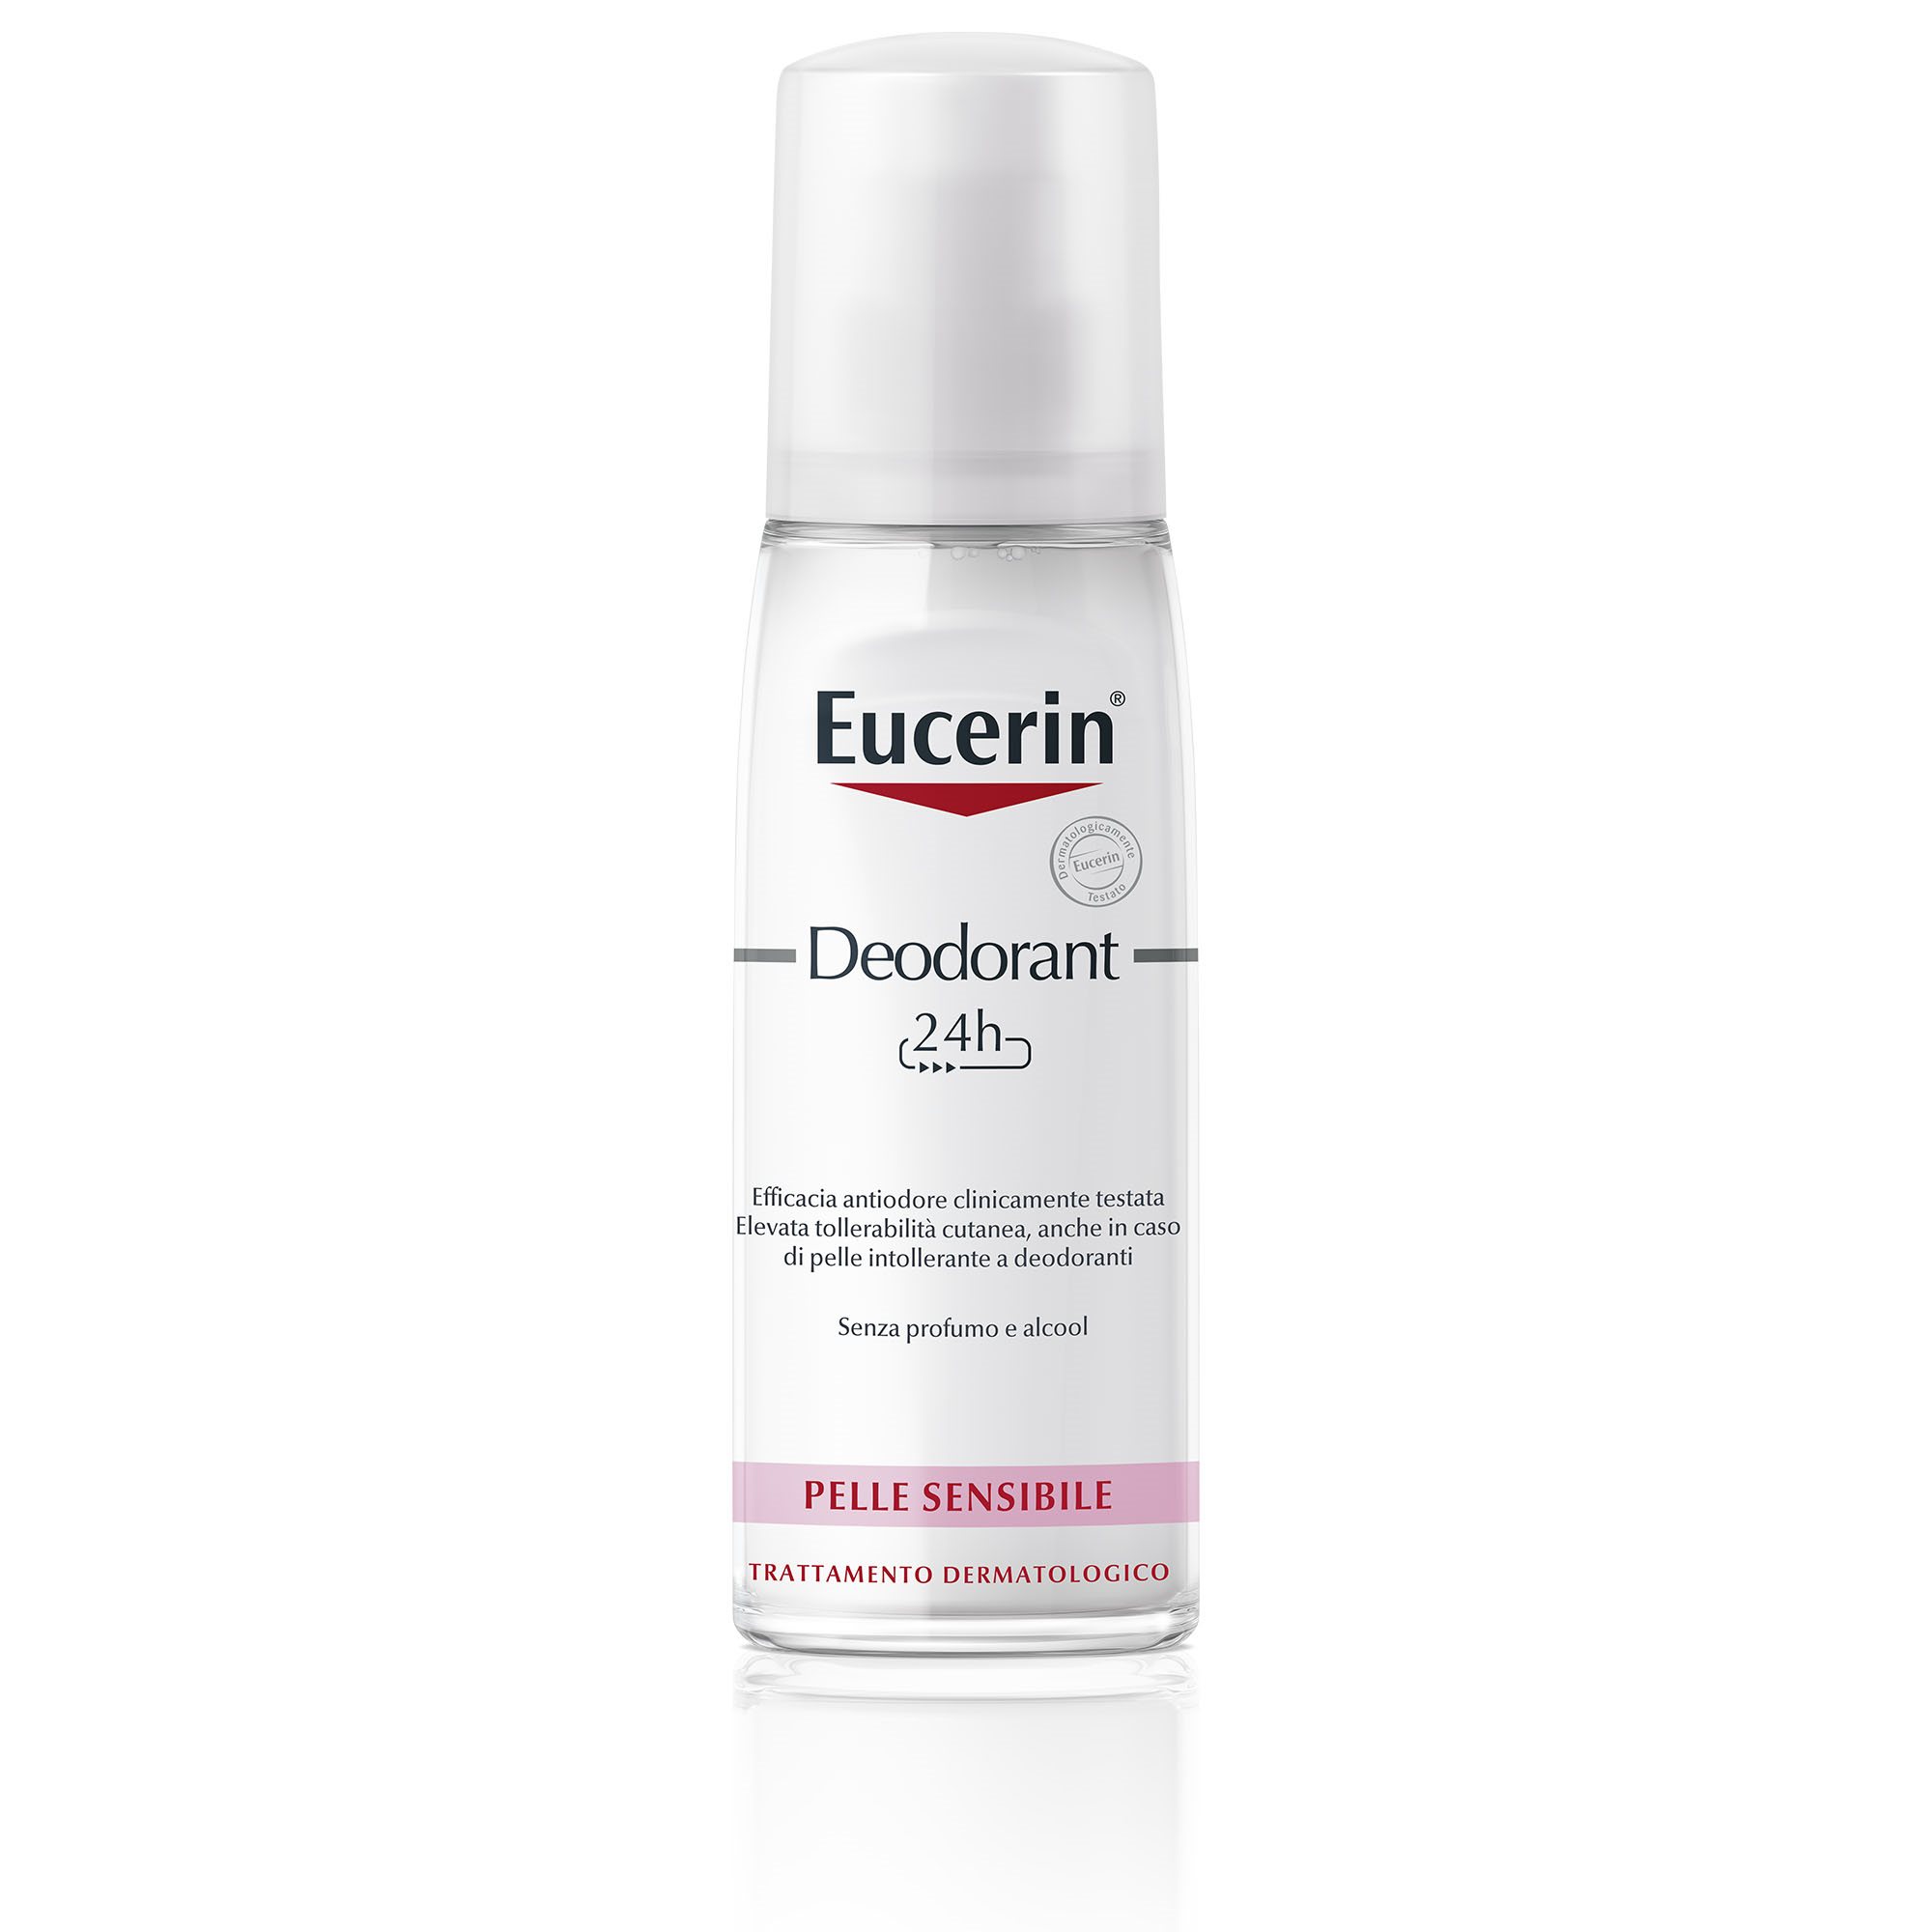 Eucerin 24 h Deodorante Pelle Sensibile Vapo